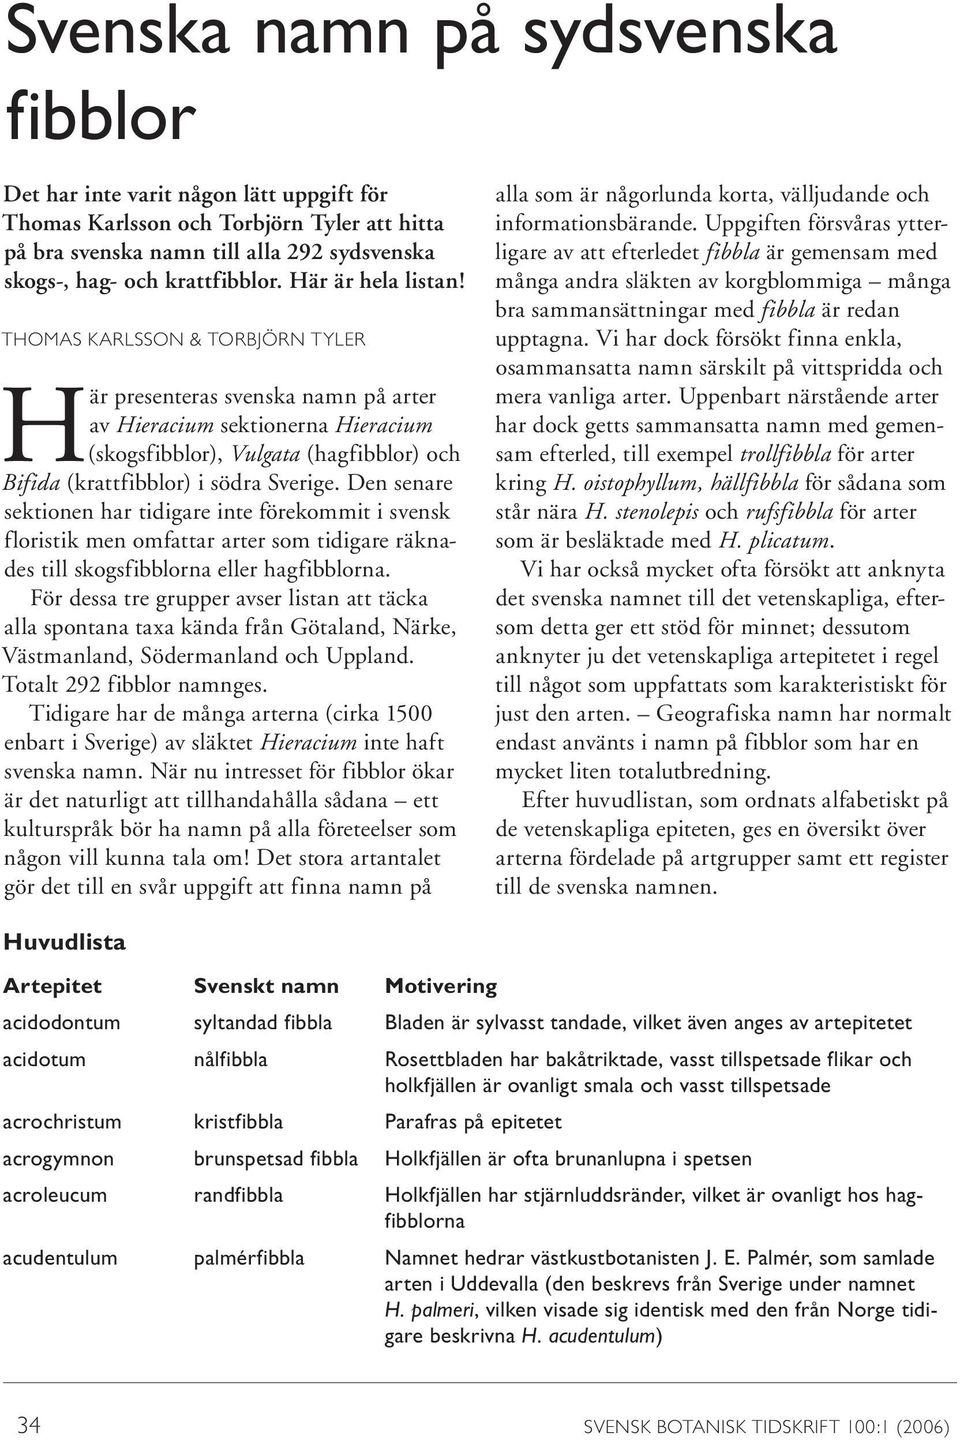 THOMAS KARLSSON & TORBJÖRN TYLER Här presenteras svenska namn på arter av Hieracium sektionerna Hieracium (skogsfibblor), Vulgata (hagfibblor) och Bifida (krattfibblor) i södra Sverige.